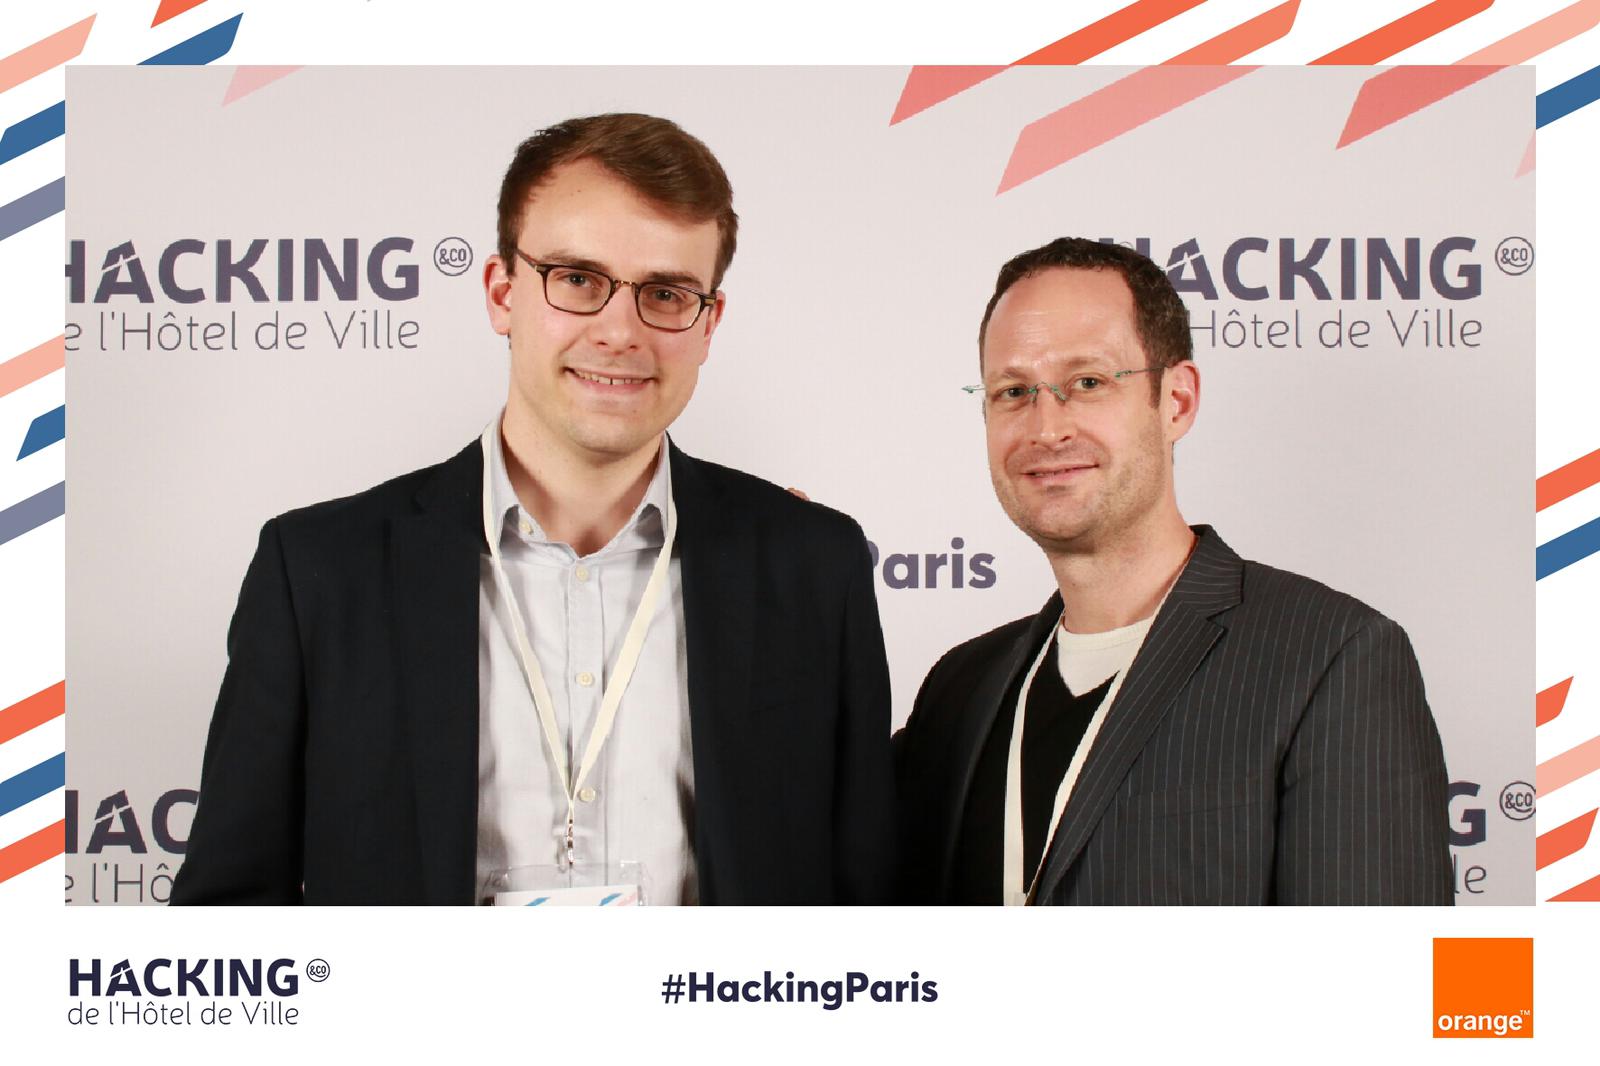 Geoffrey et Gaël au Hacking de l’Hotel de Ville à Paris (21 mars 2019)